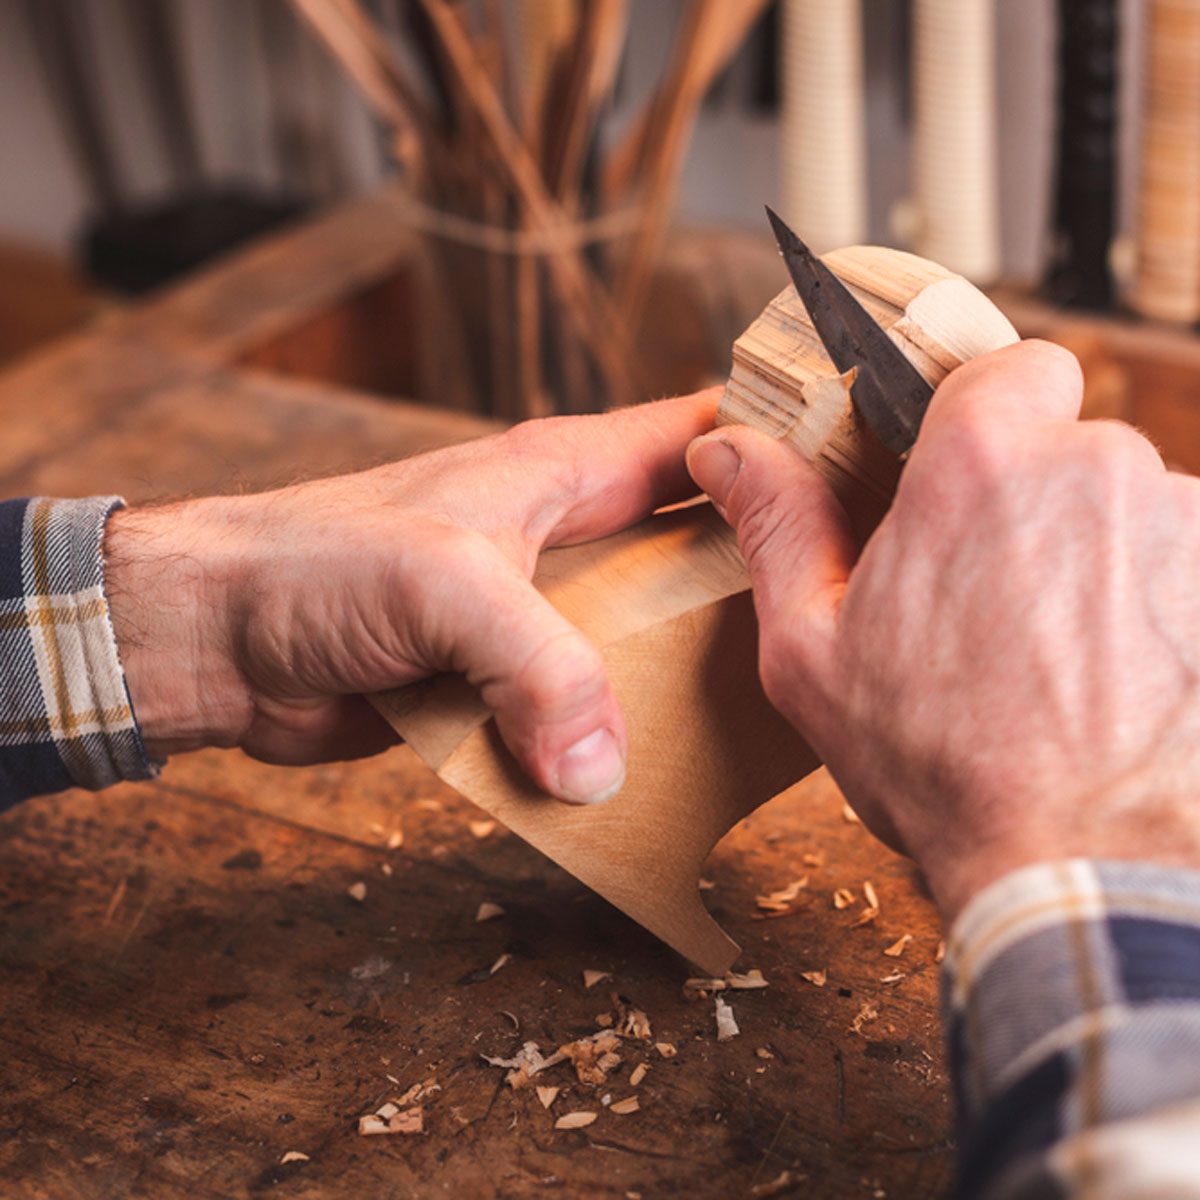 10 Tips to Start Whittling Wood Like an Expert